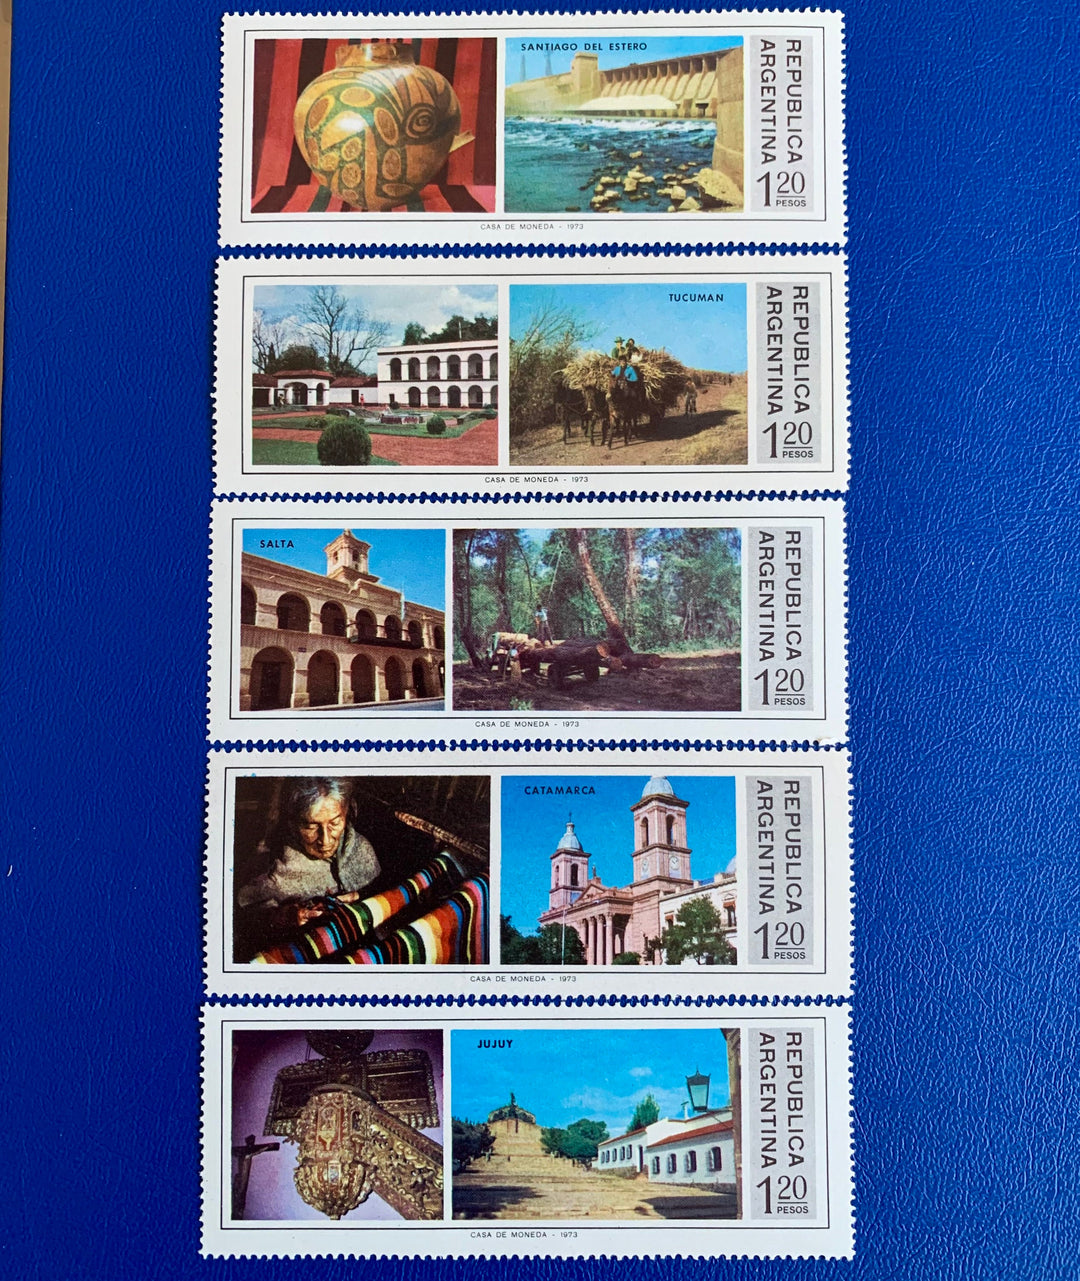 Argentina - Original Vintage Postage Stamps- 1973 Argentine Provinces- for the collector, artist or crafter